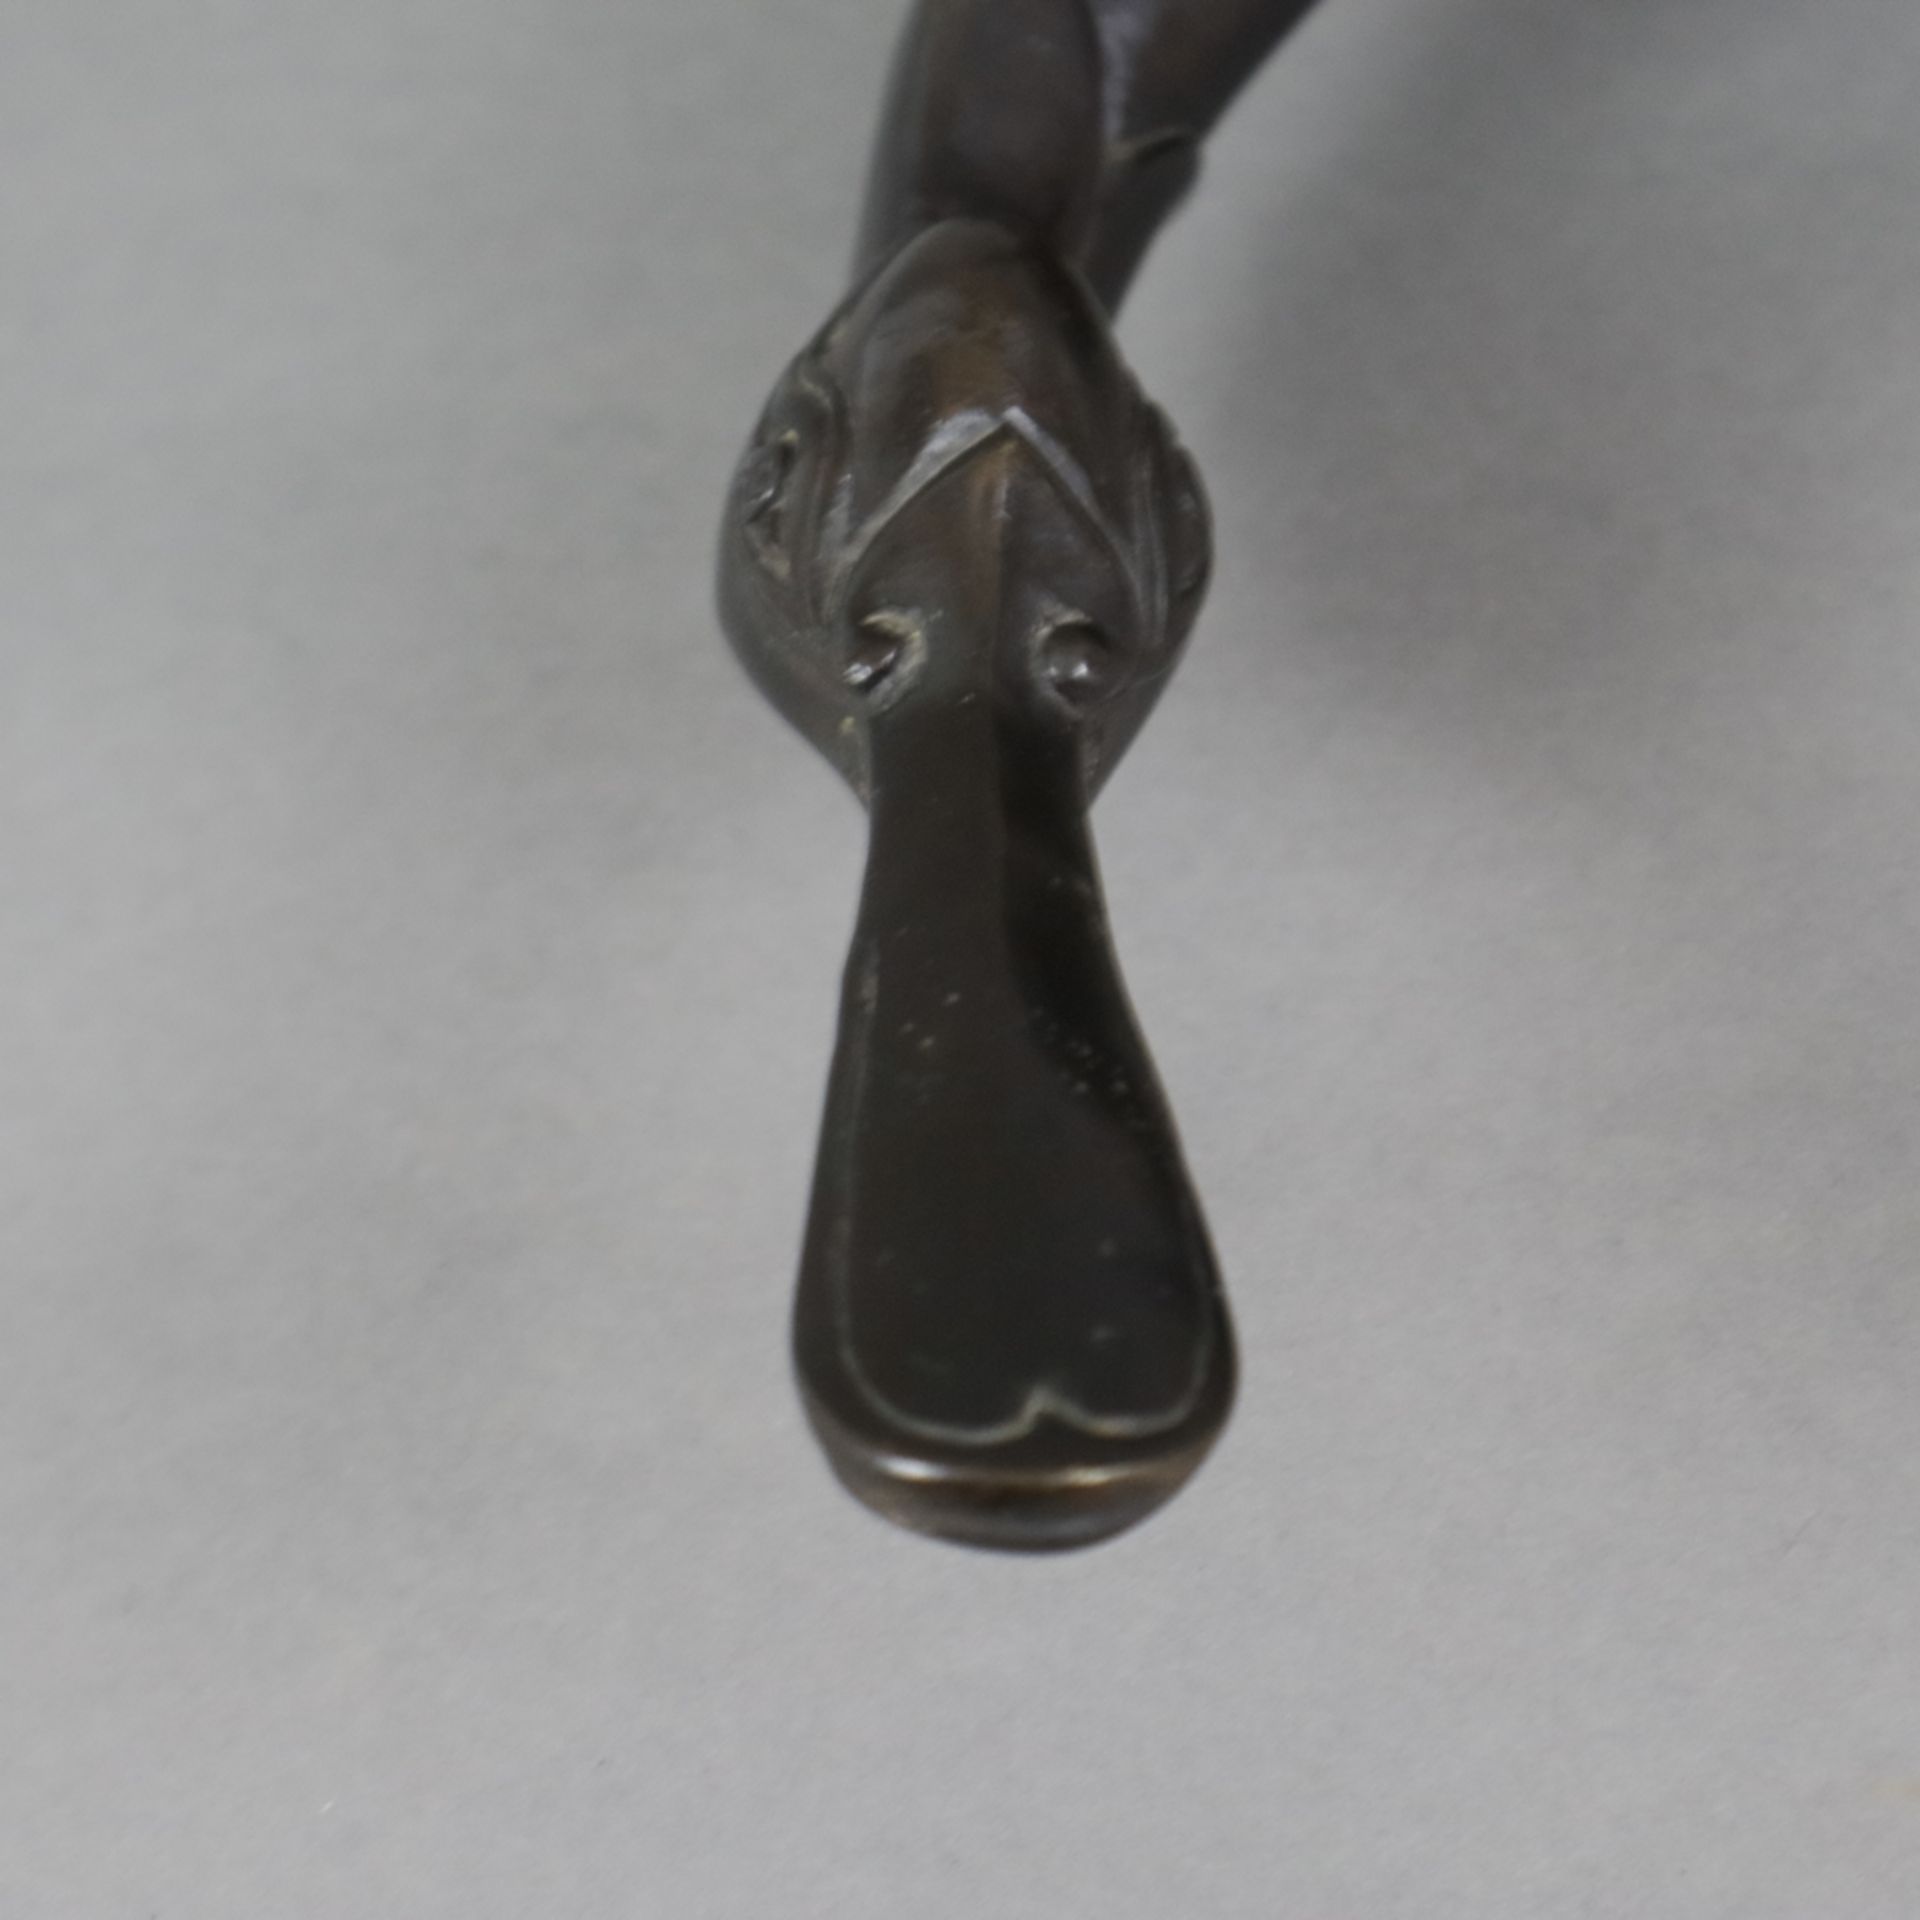 Tierfigur "Ente" - Messingguss, bronziert, unterseitig gestempelt "Santi's" mit Auflagenr. 11/5000, - Image 2 of 10